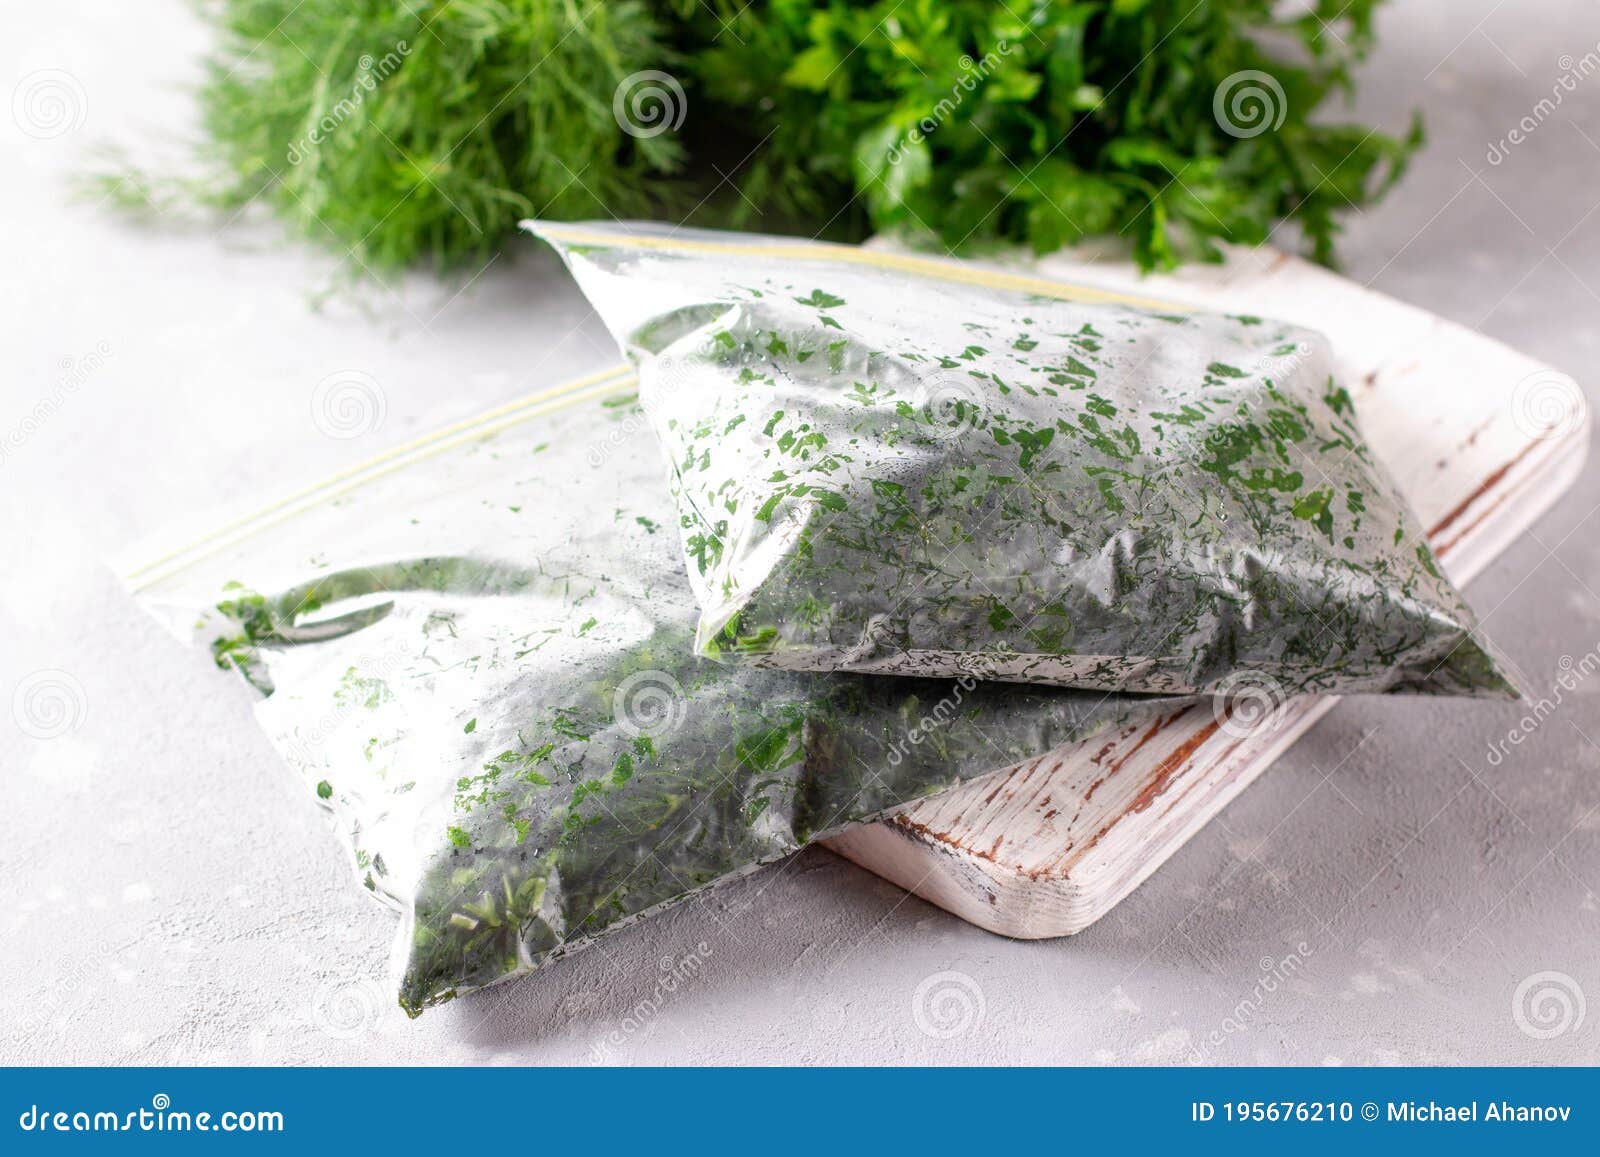 Можно просто заморозить. Замороженная зелень. Зеленая трава замороженная что это. Замороженные укроп петрушка в пакетах. Замороженный укроп.